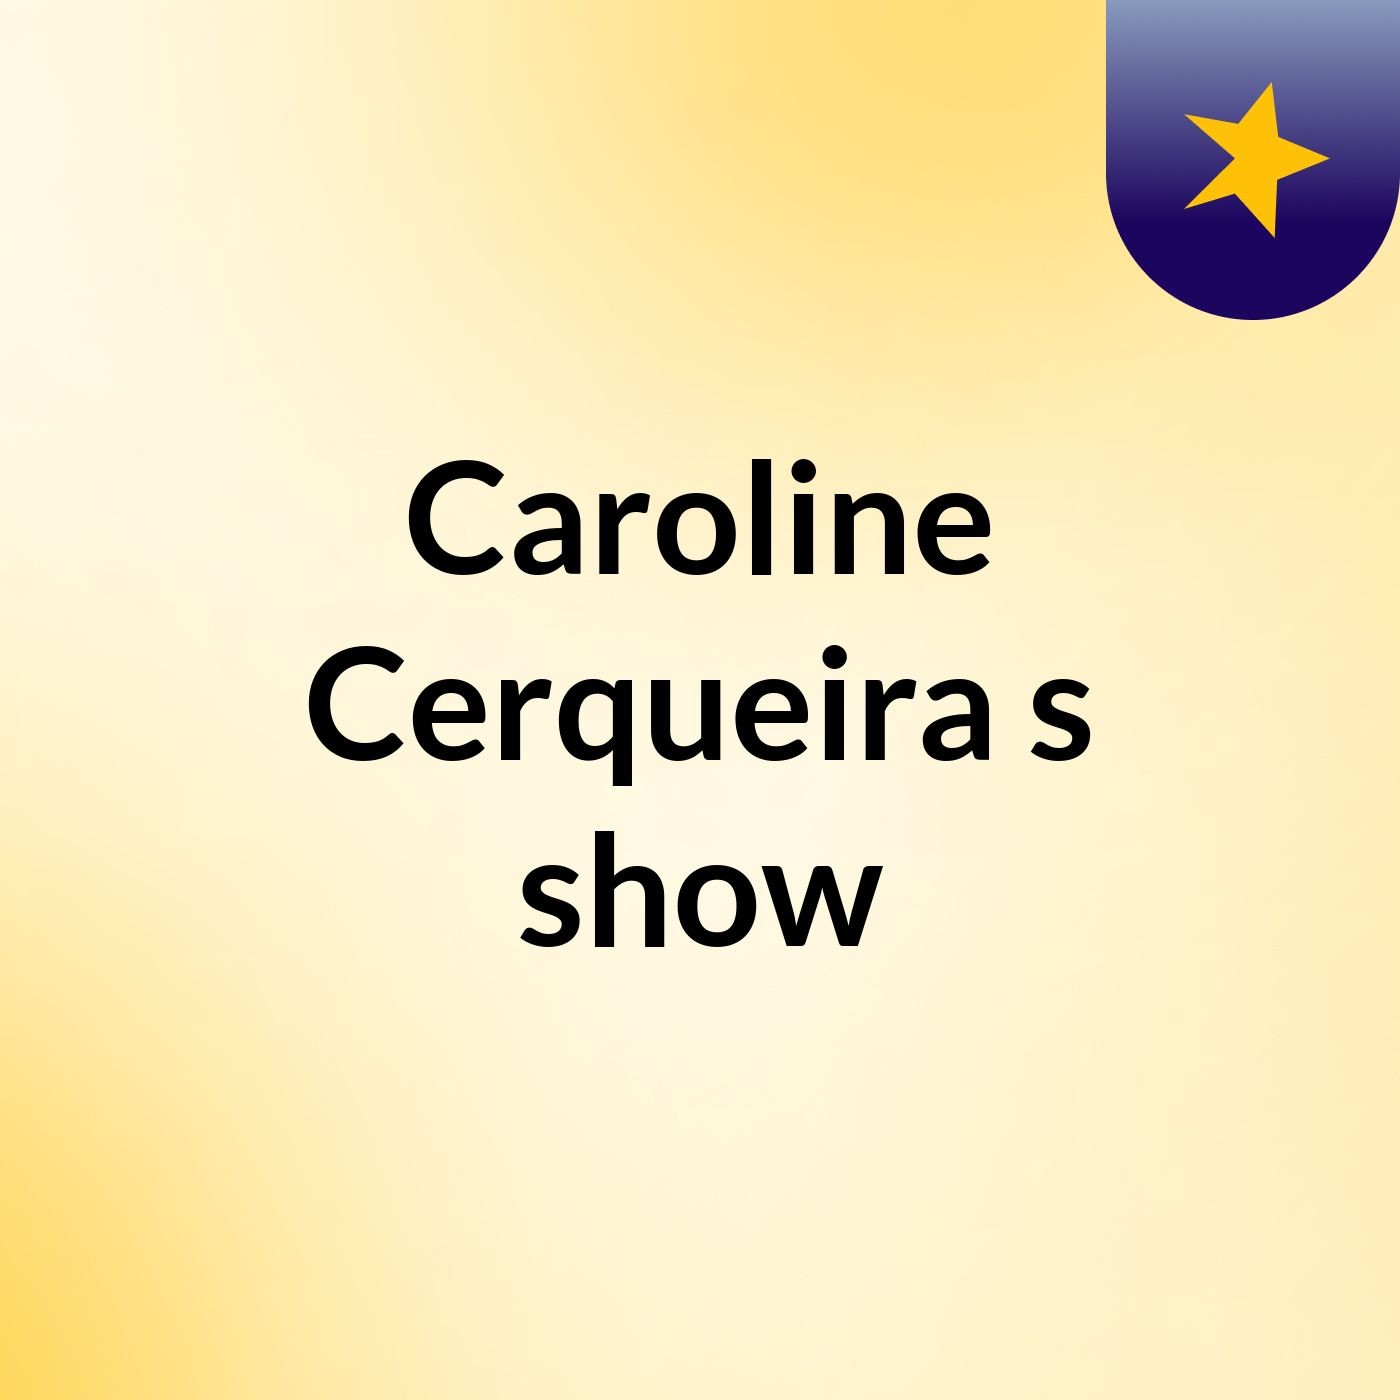 Caroline Cerqueira's show